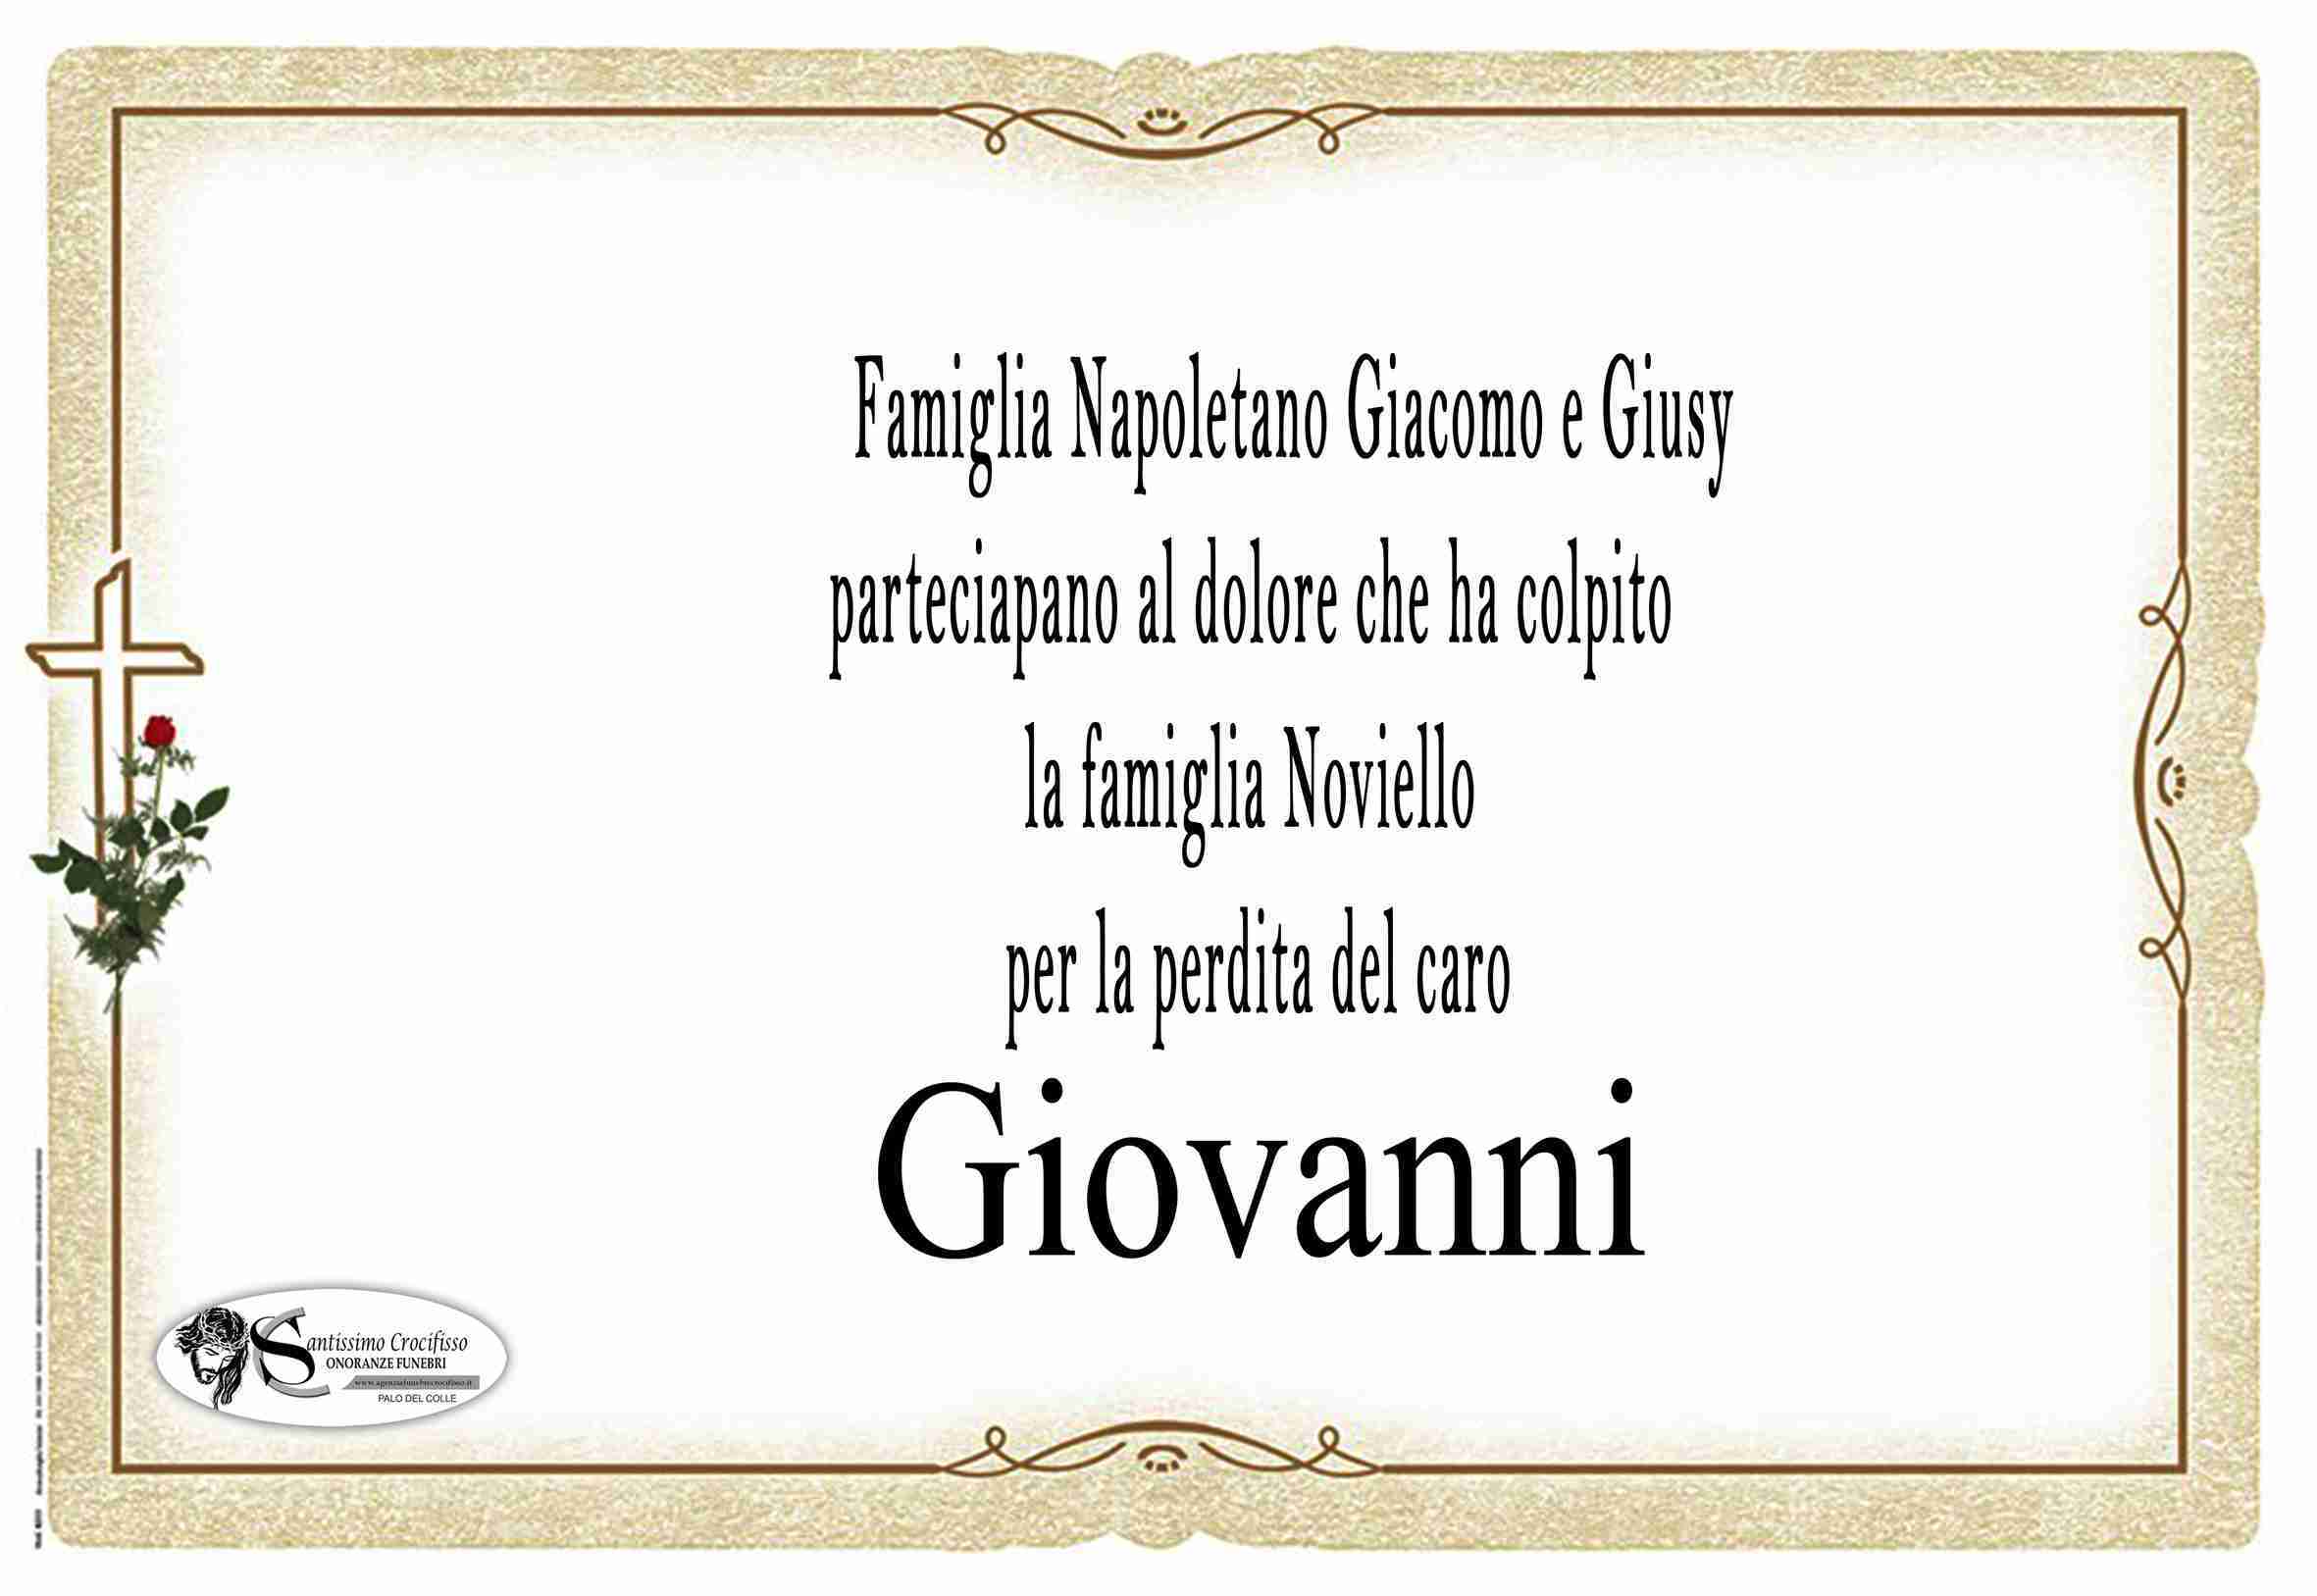 Giovanni Noviello